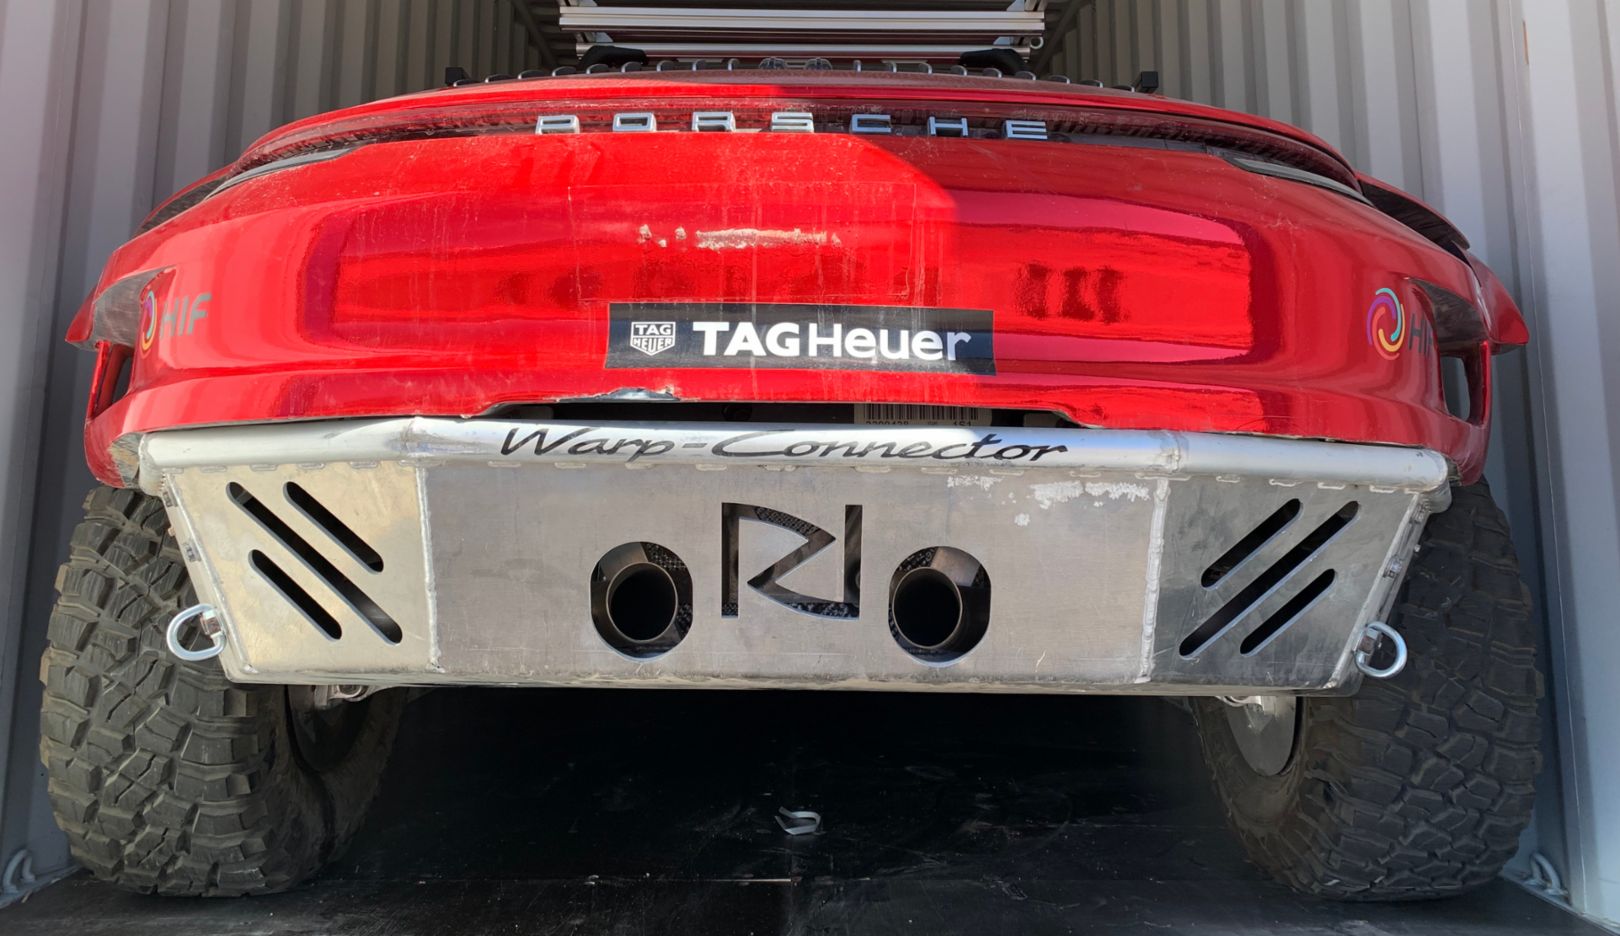 Indrukwekkend achteraanzicht: De Warp Connector-letters verwijzen naar het systeem met dezelfde naam. Het was oorspronkelijk bedoeld voor gebruik in de Porsche 919 Hybrid (LMP1).